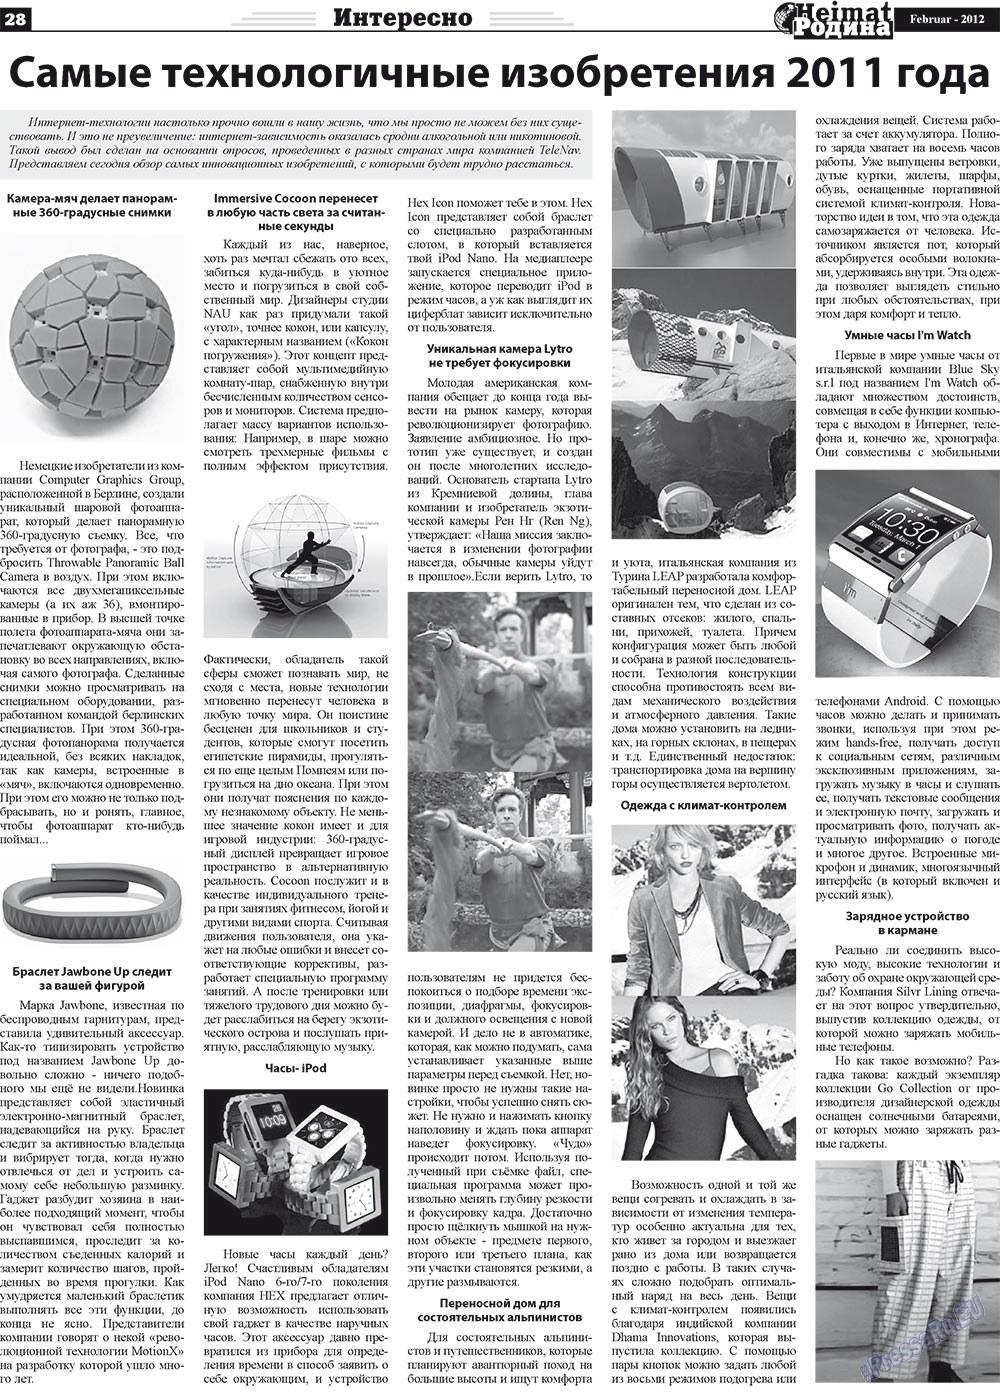 Heimat-Родина (газета). 2012 год, номер 2, стр. 28